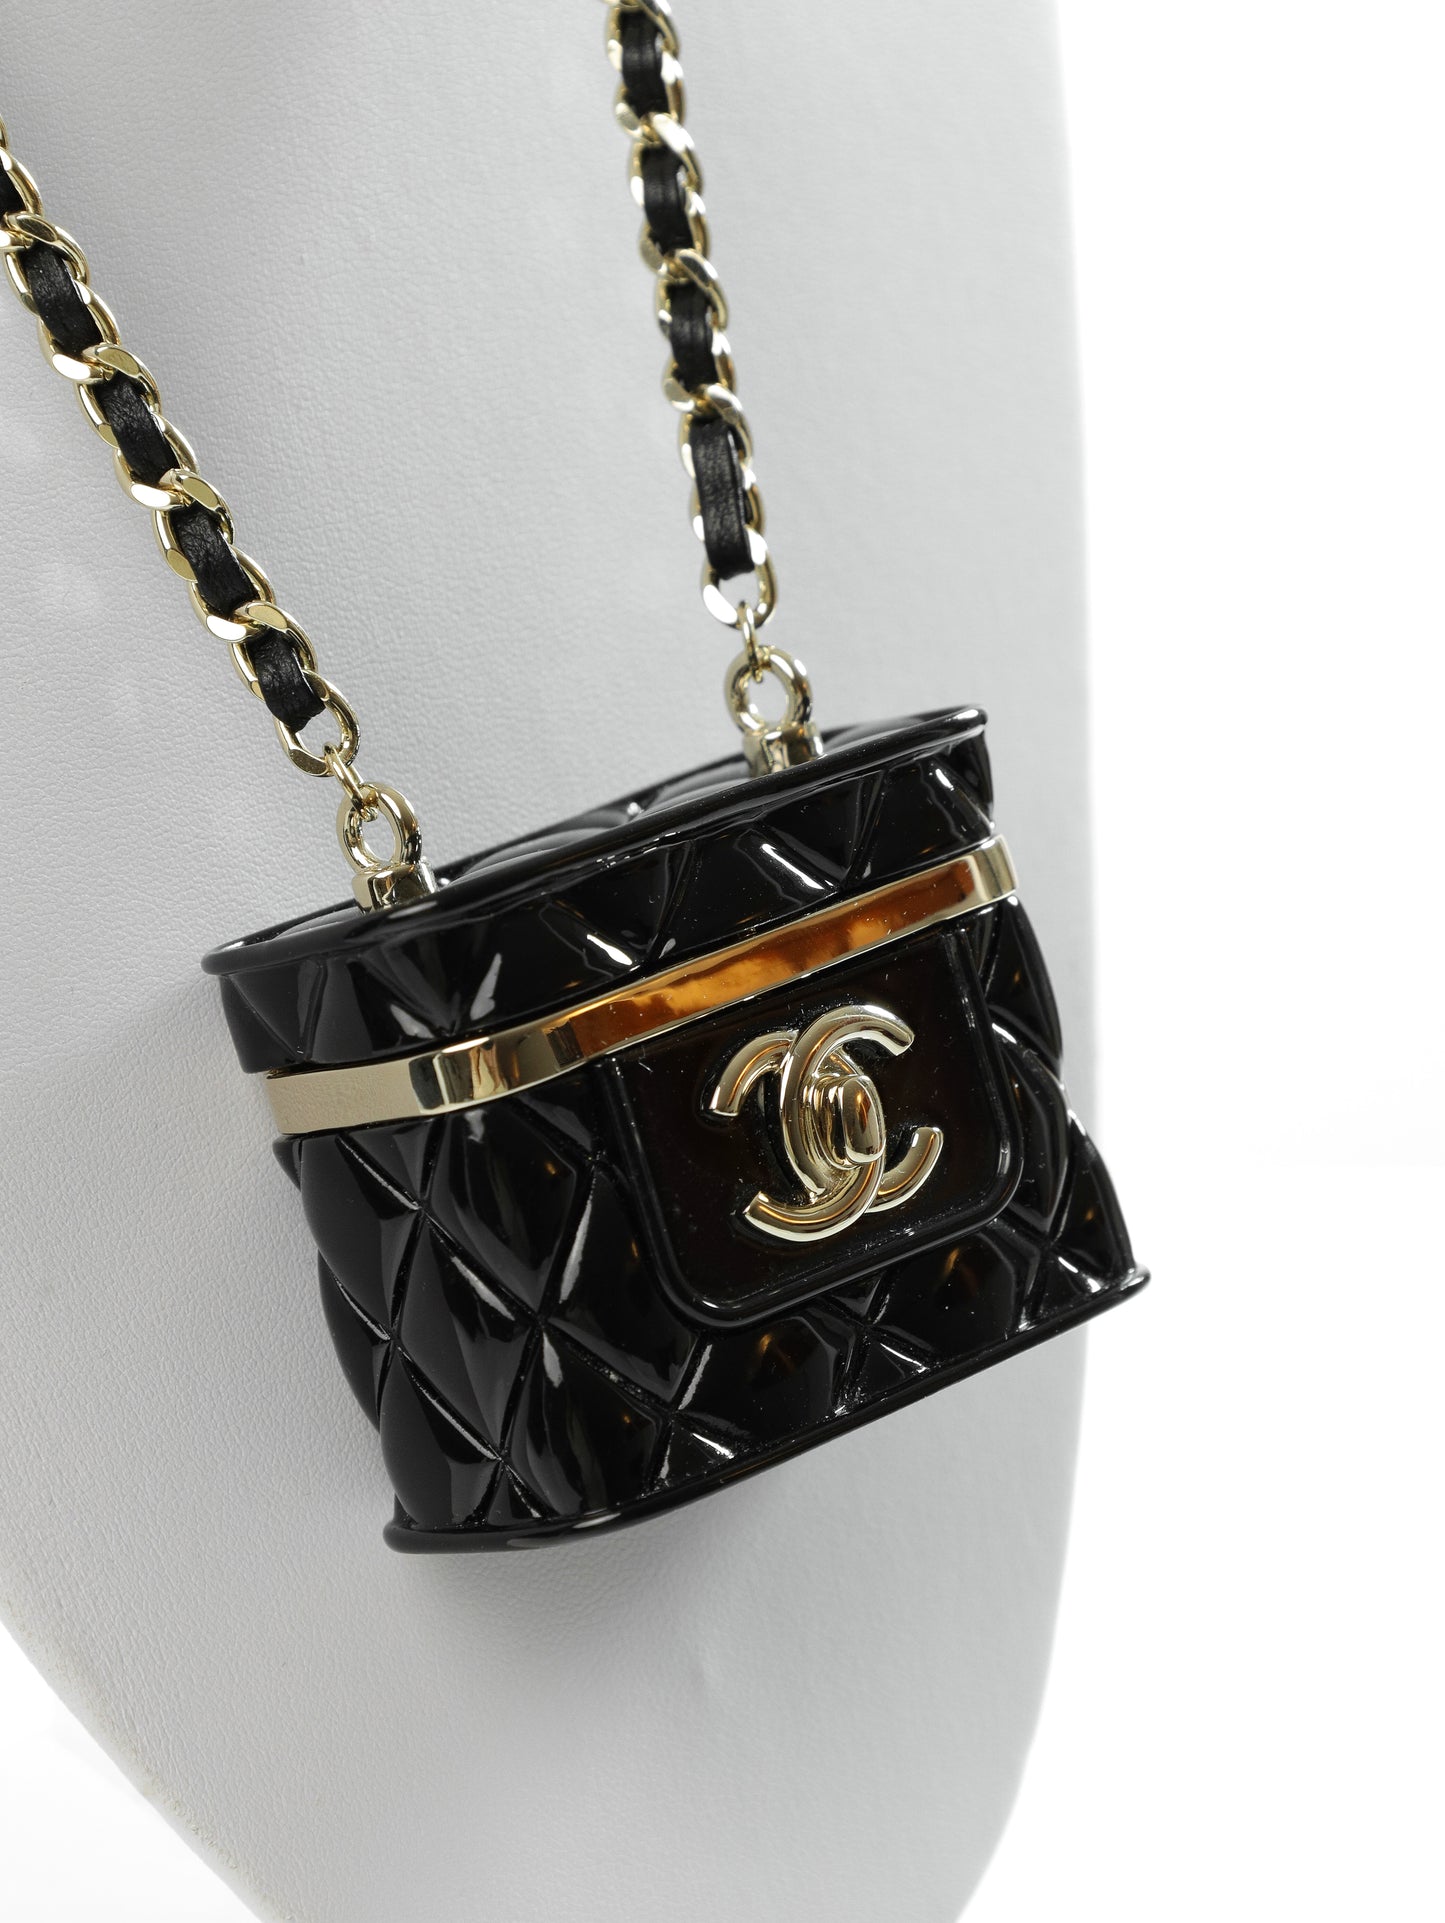 CHANEL Halskette Kette mit Handtaschen Anhänger Vanity Bag